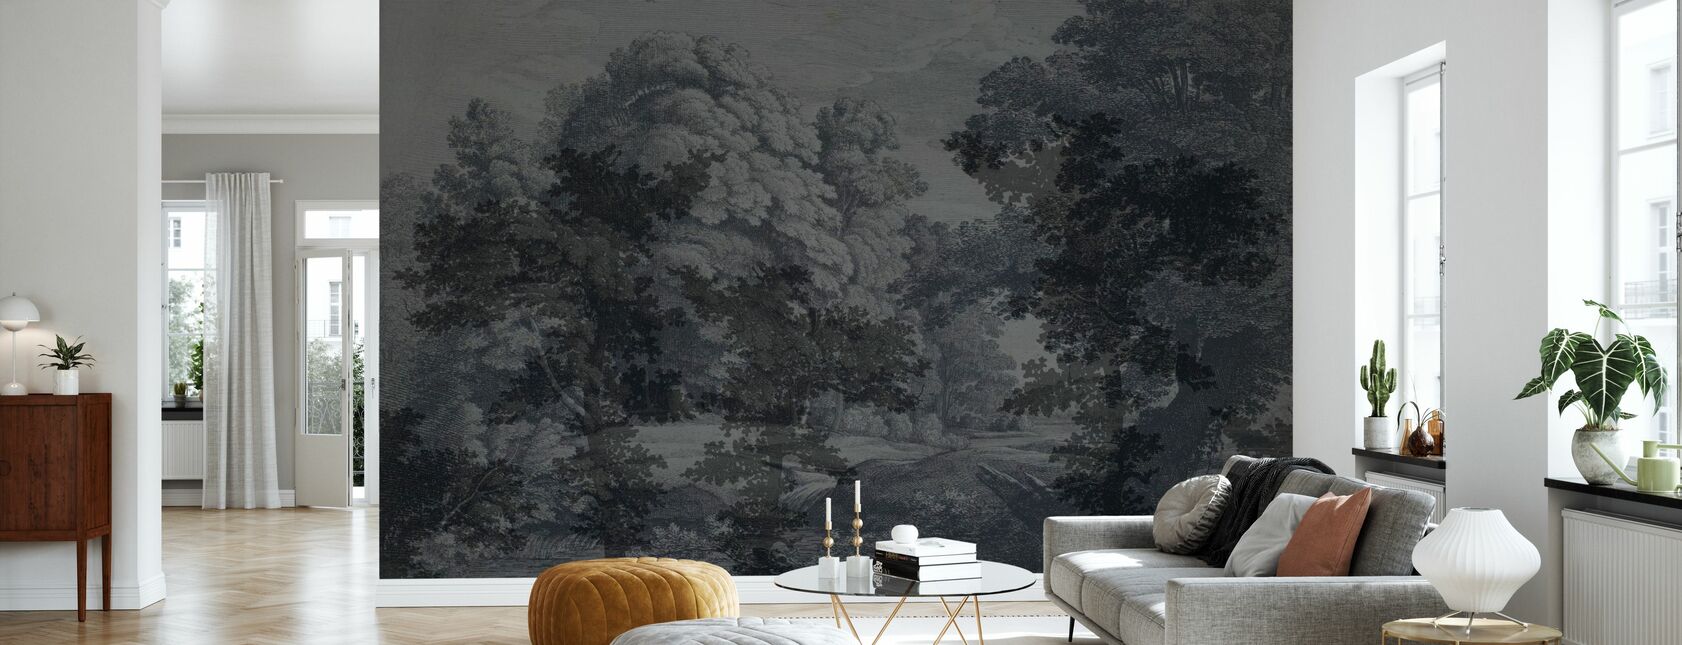 Lace - Summer Night - Wallpaper - Living Room